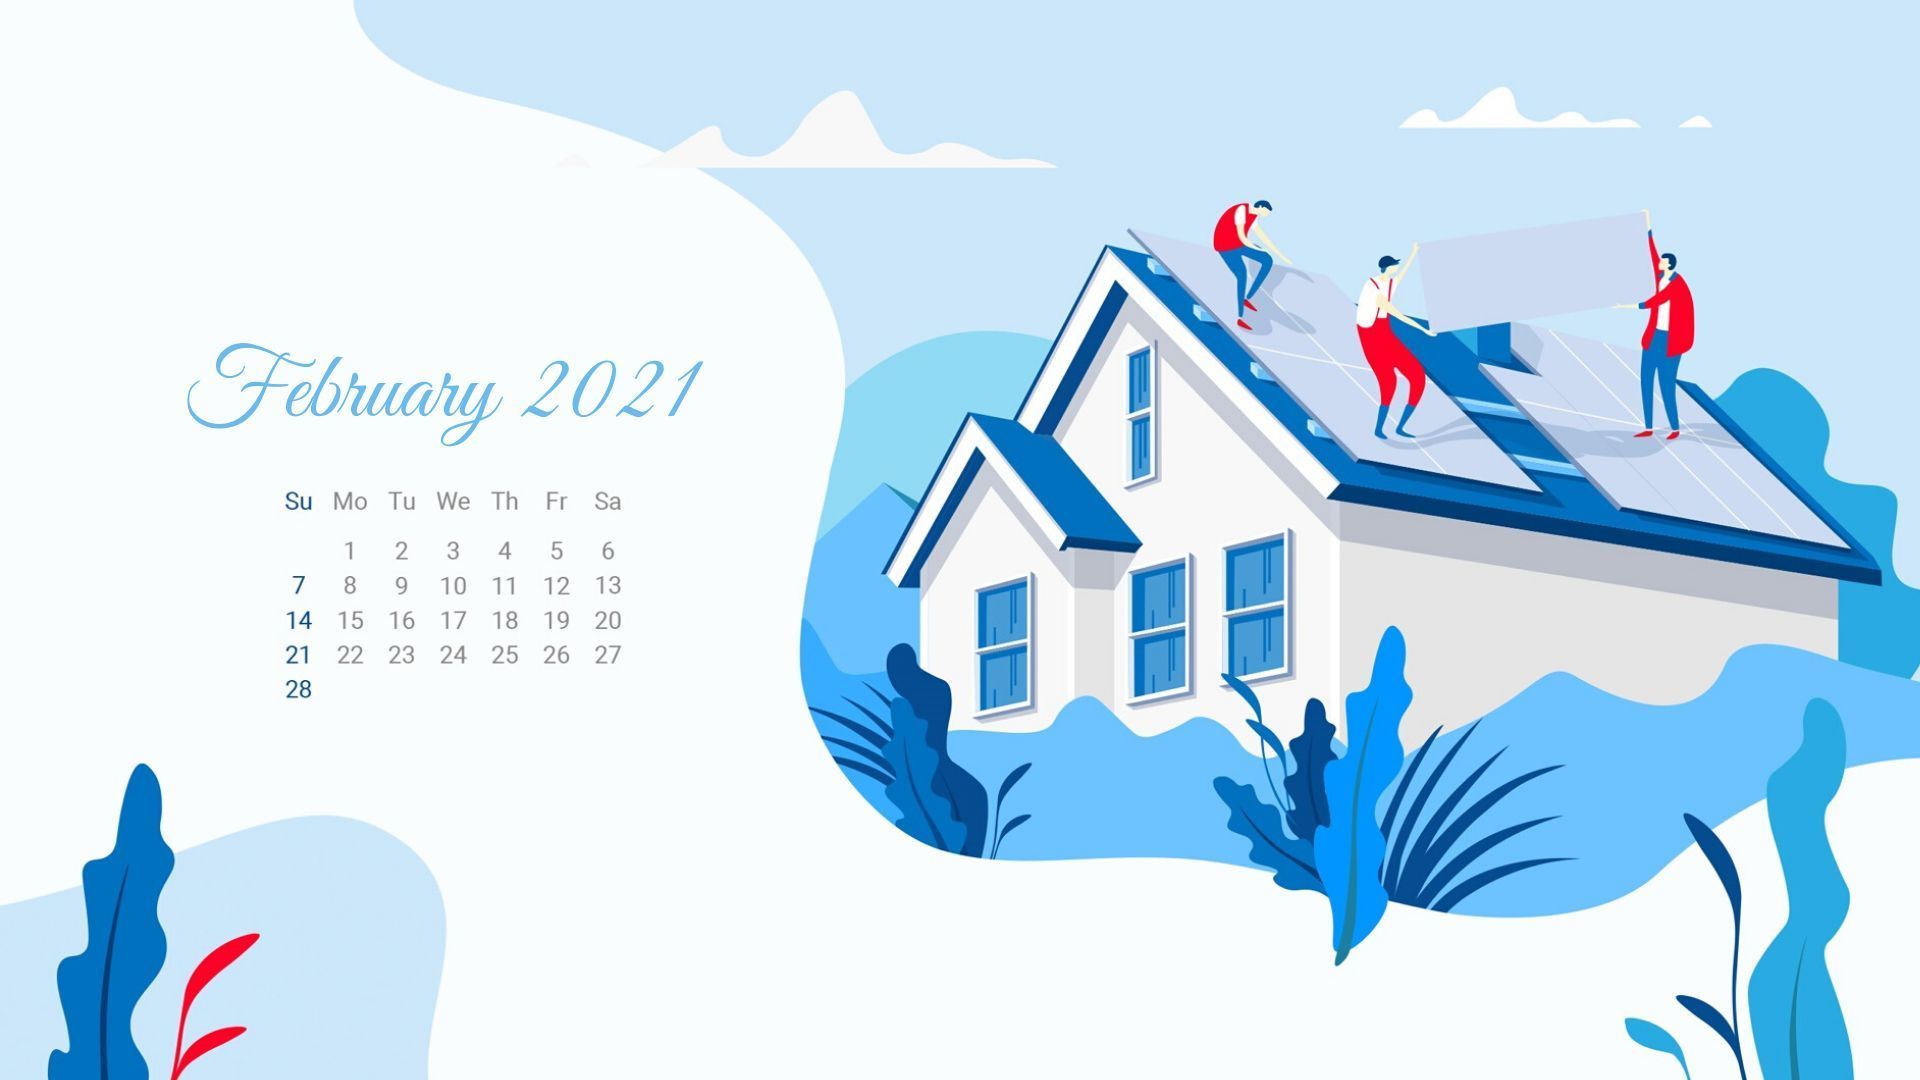 February 2021 Calendar Wallpaper. Calendar wallpaper, 2021 calendar, Desktop wallpaper calendar